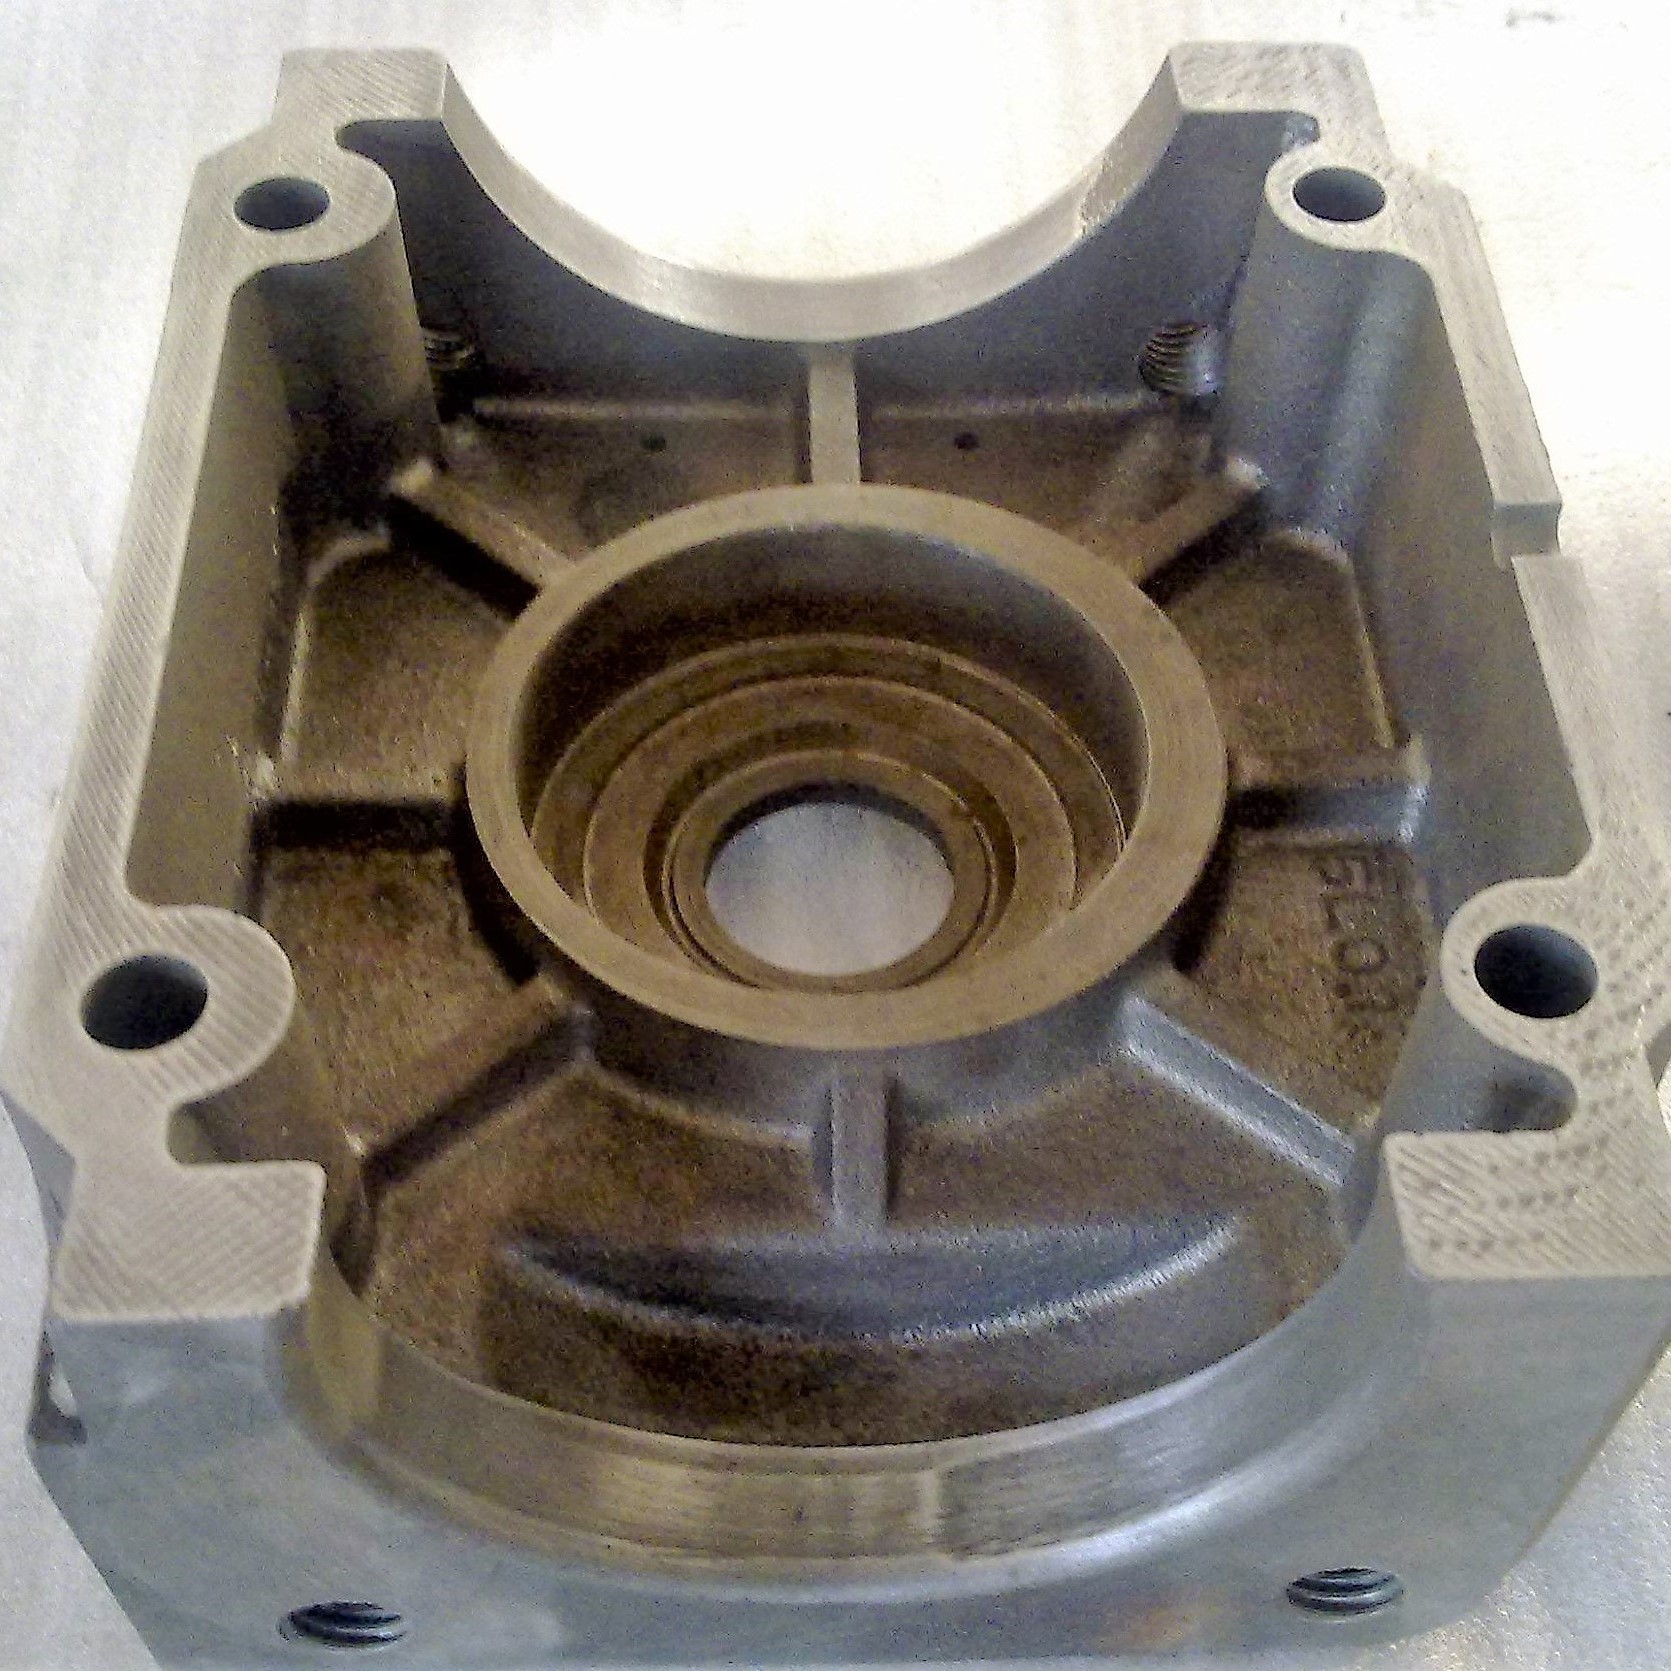 隔膜泵端盖 1 Membrane pump cover 1.jpg